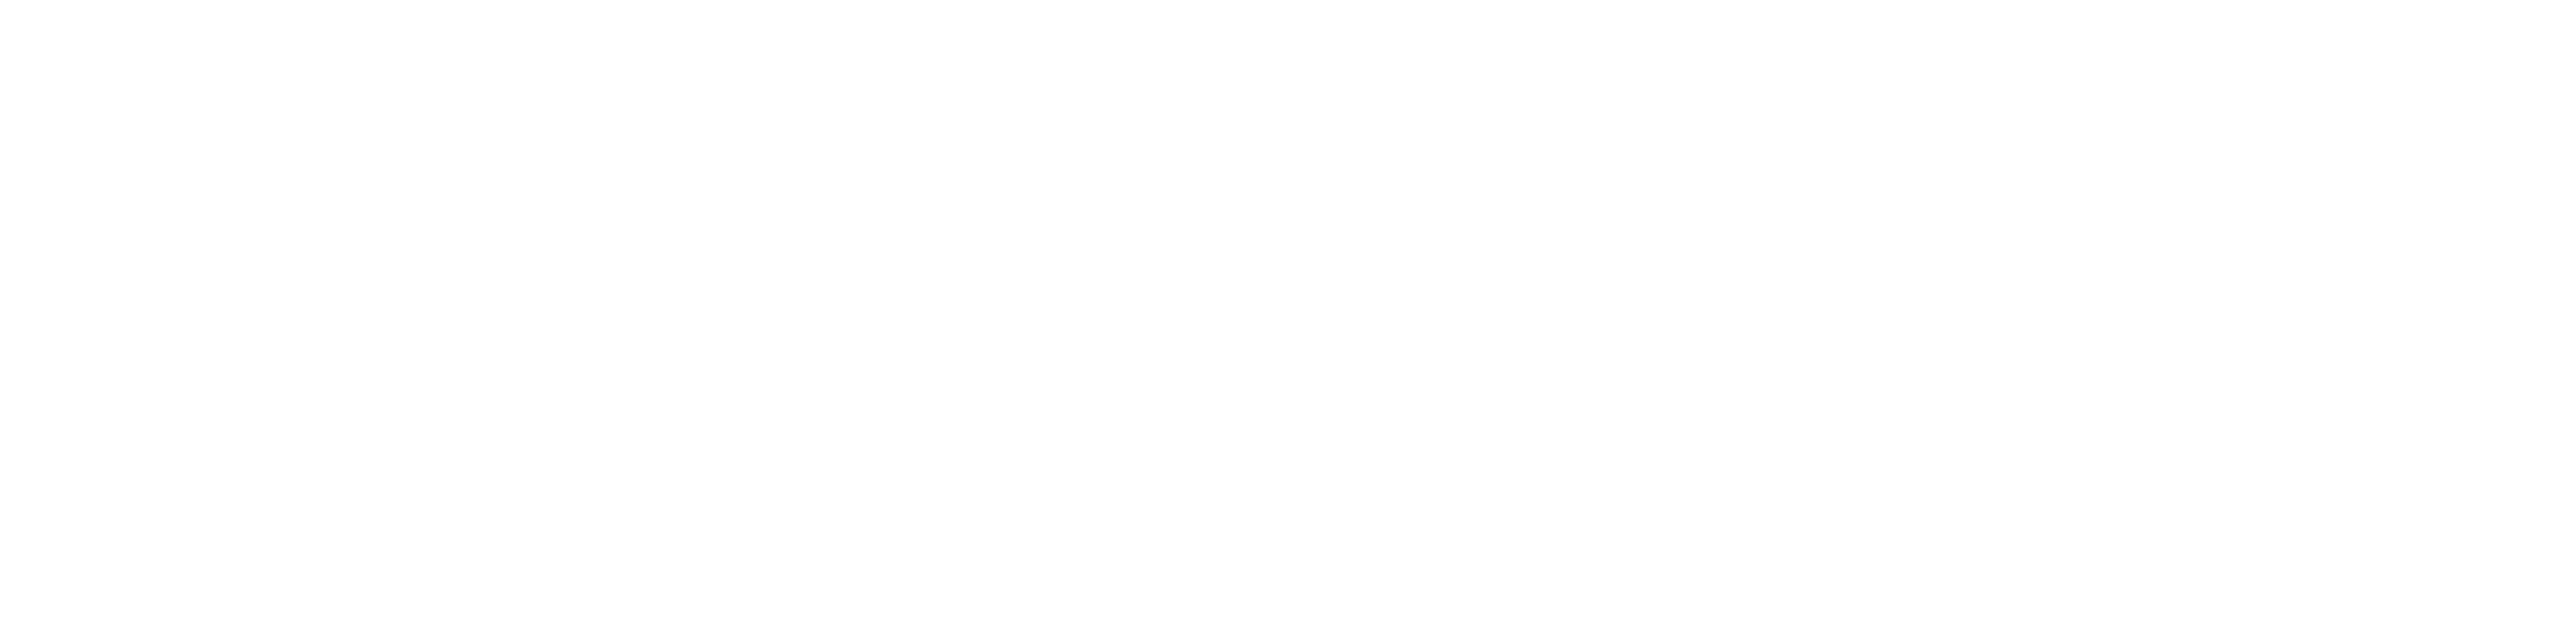 s&n design full logo white